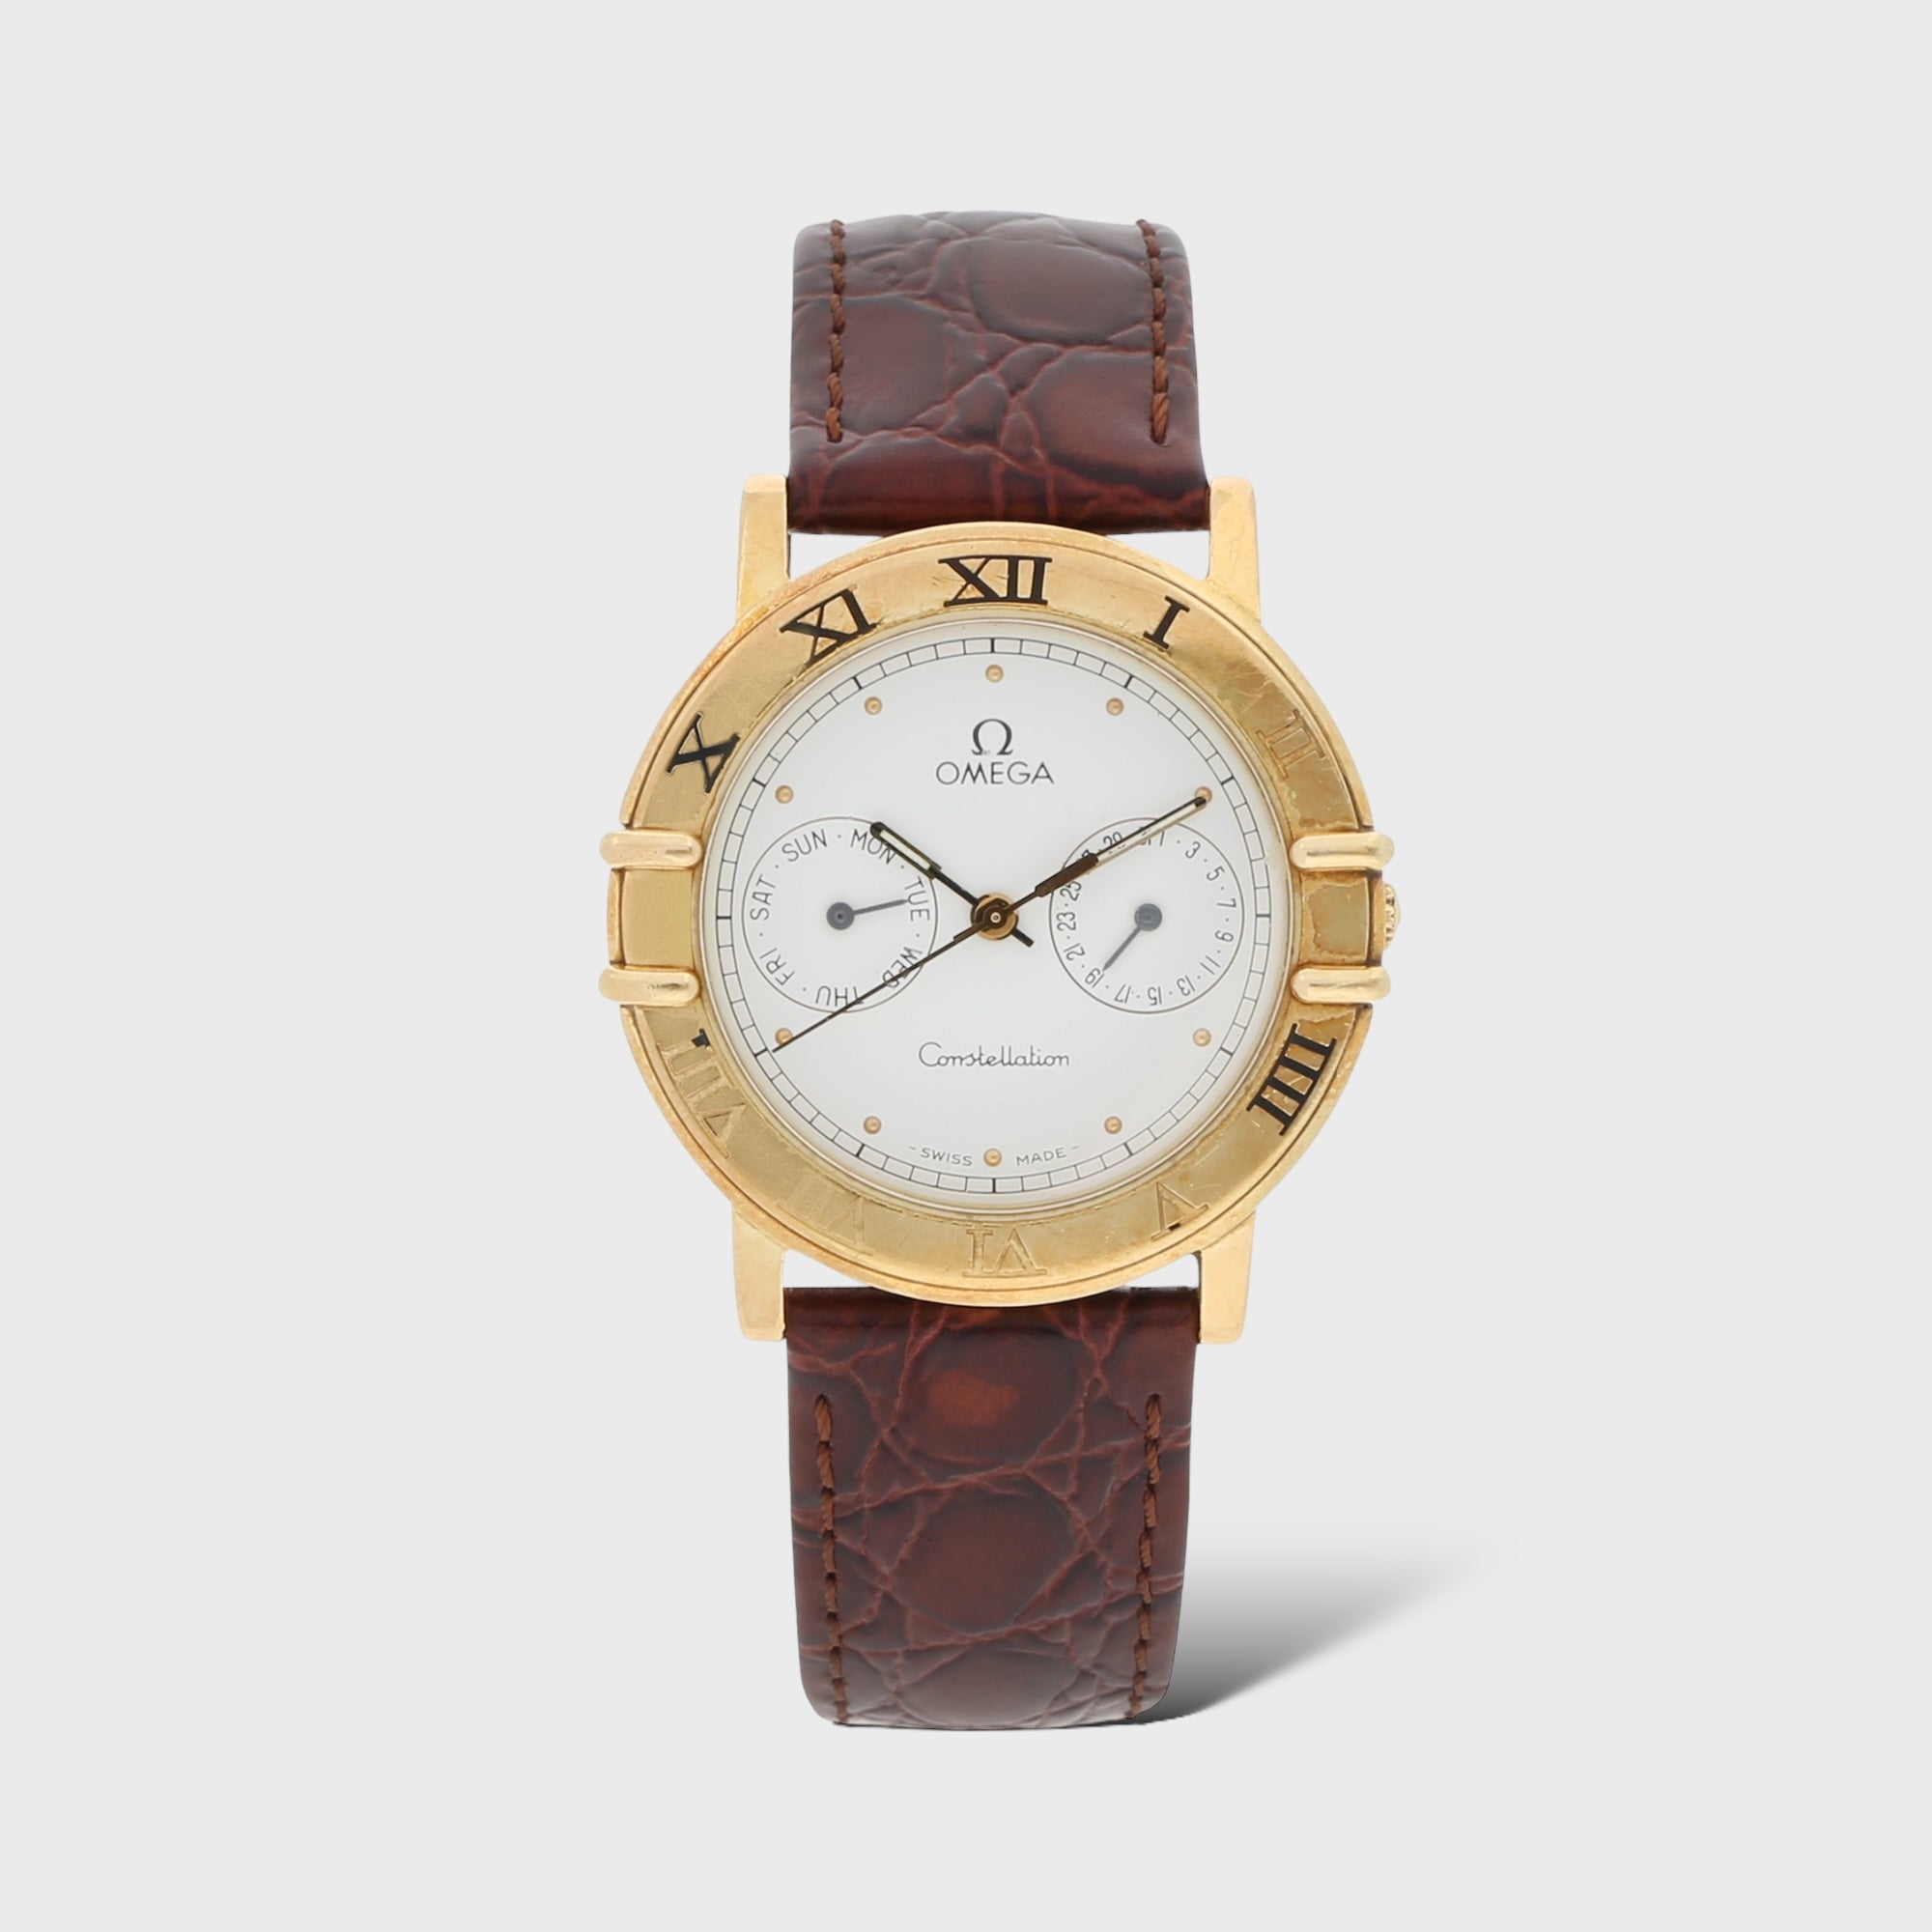 Second Hand Omega Uhr jetzt online kaufen auf kaleaz.